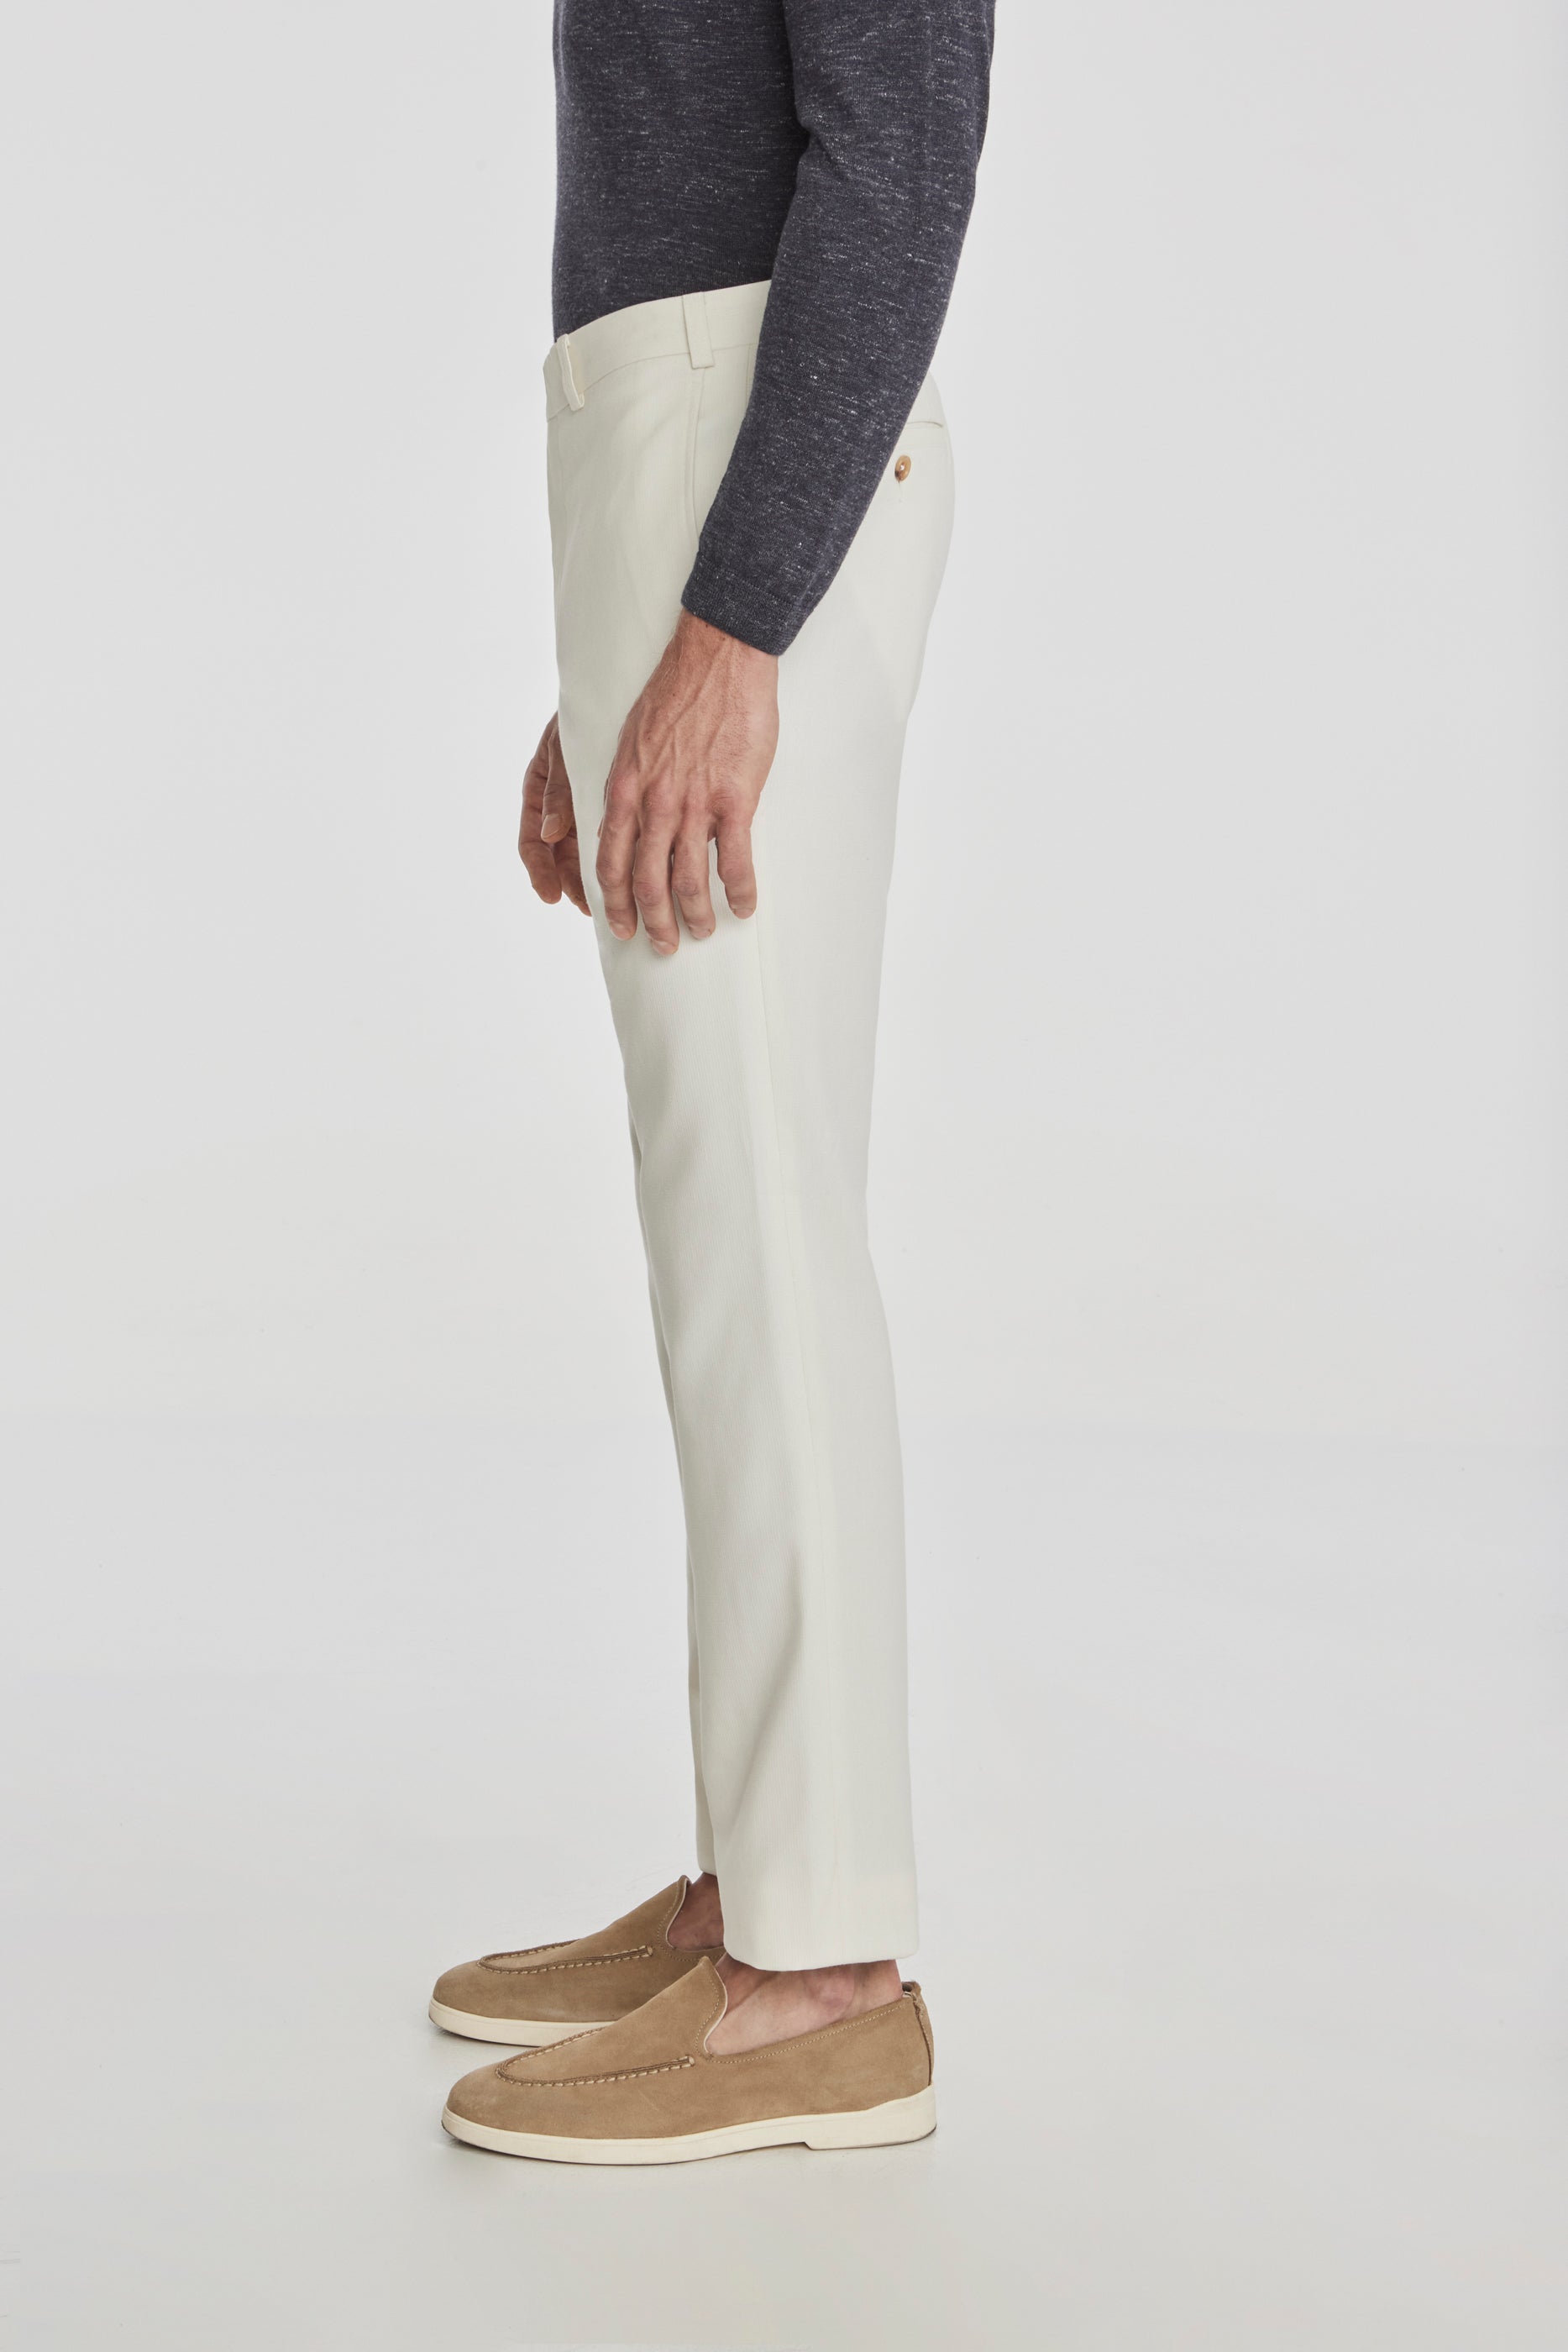 Vue alternative 2 Palmer pantalon en coton texturé et laine stretch en écru